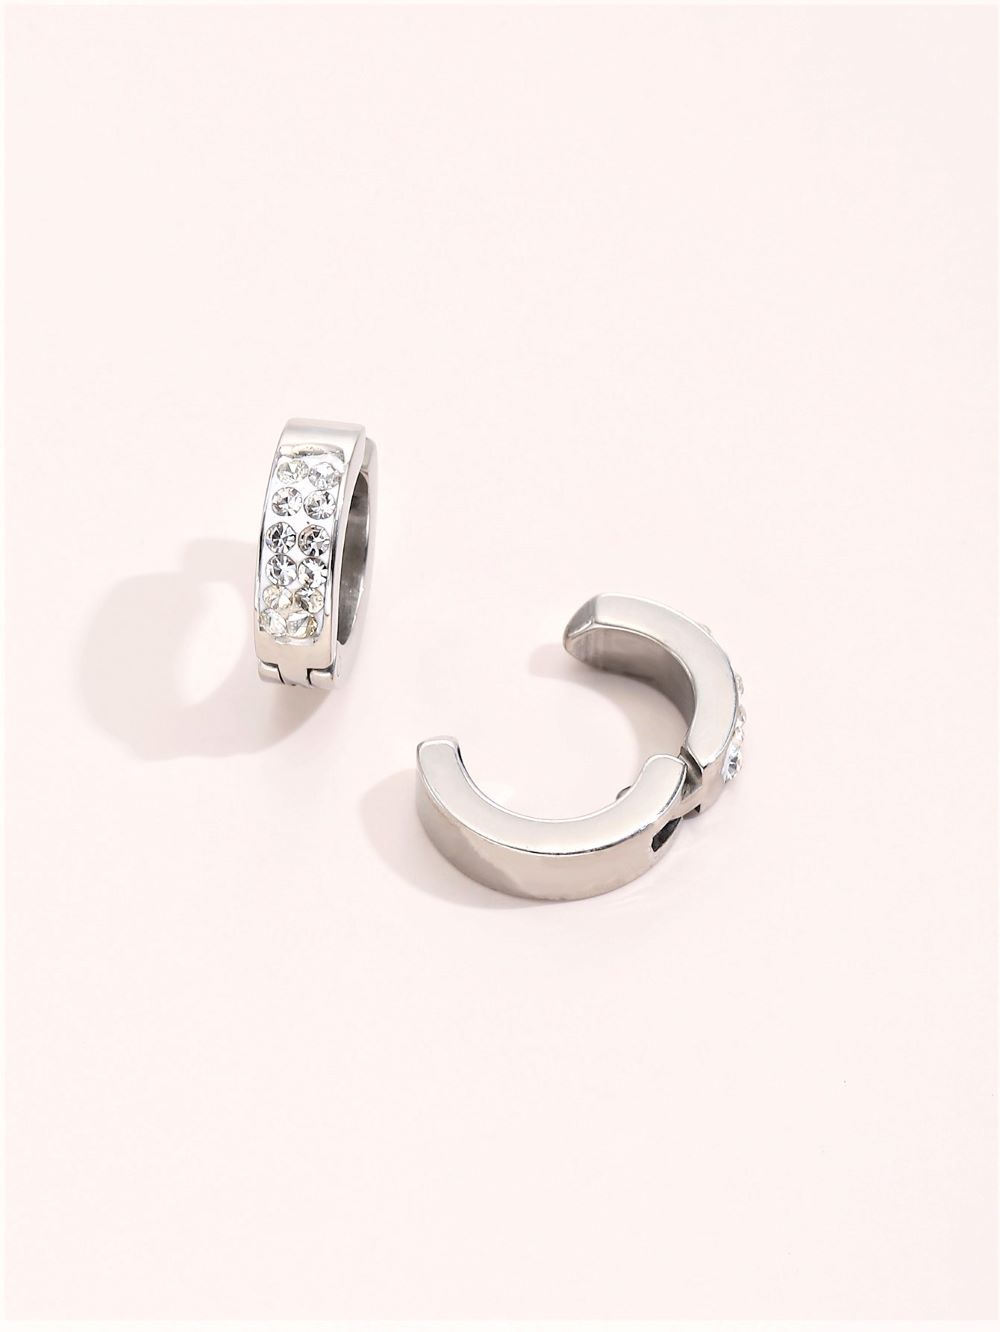 10 pcs - Stainless Steel Crystal Stud Earrings Ear Clip Cuff Non Pierced|GCJ552|UK SELLER